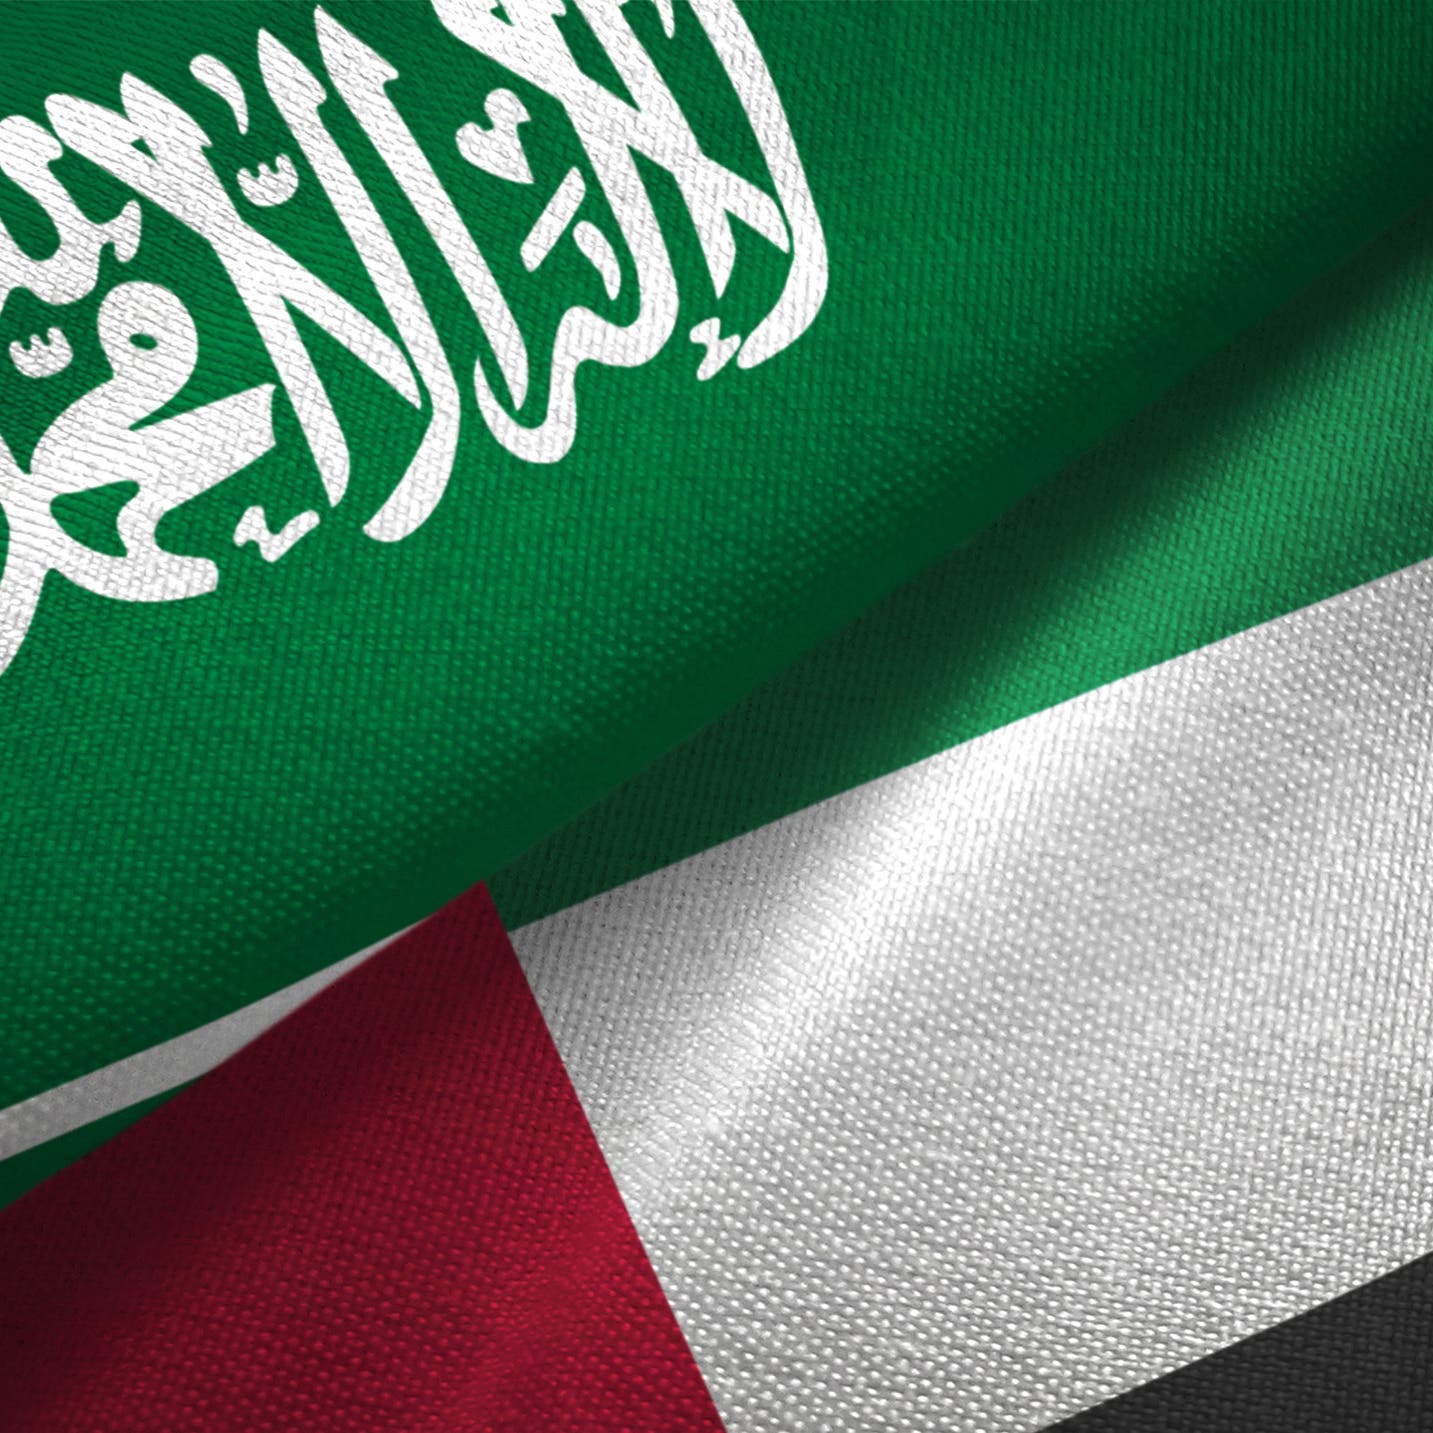 السعودية: نقف مع الإمارات ضد كل ما يهدد أمنها واستقرارها